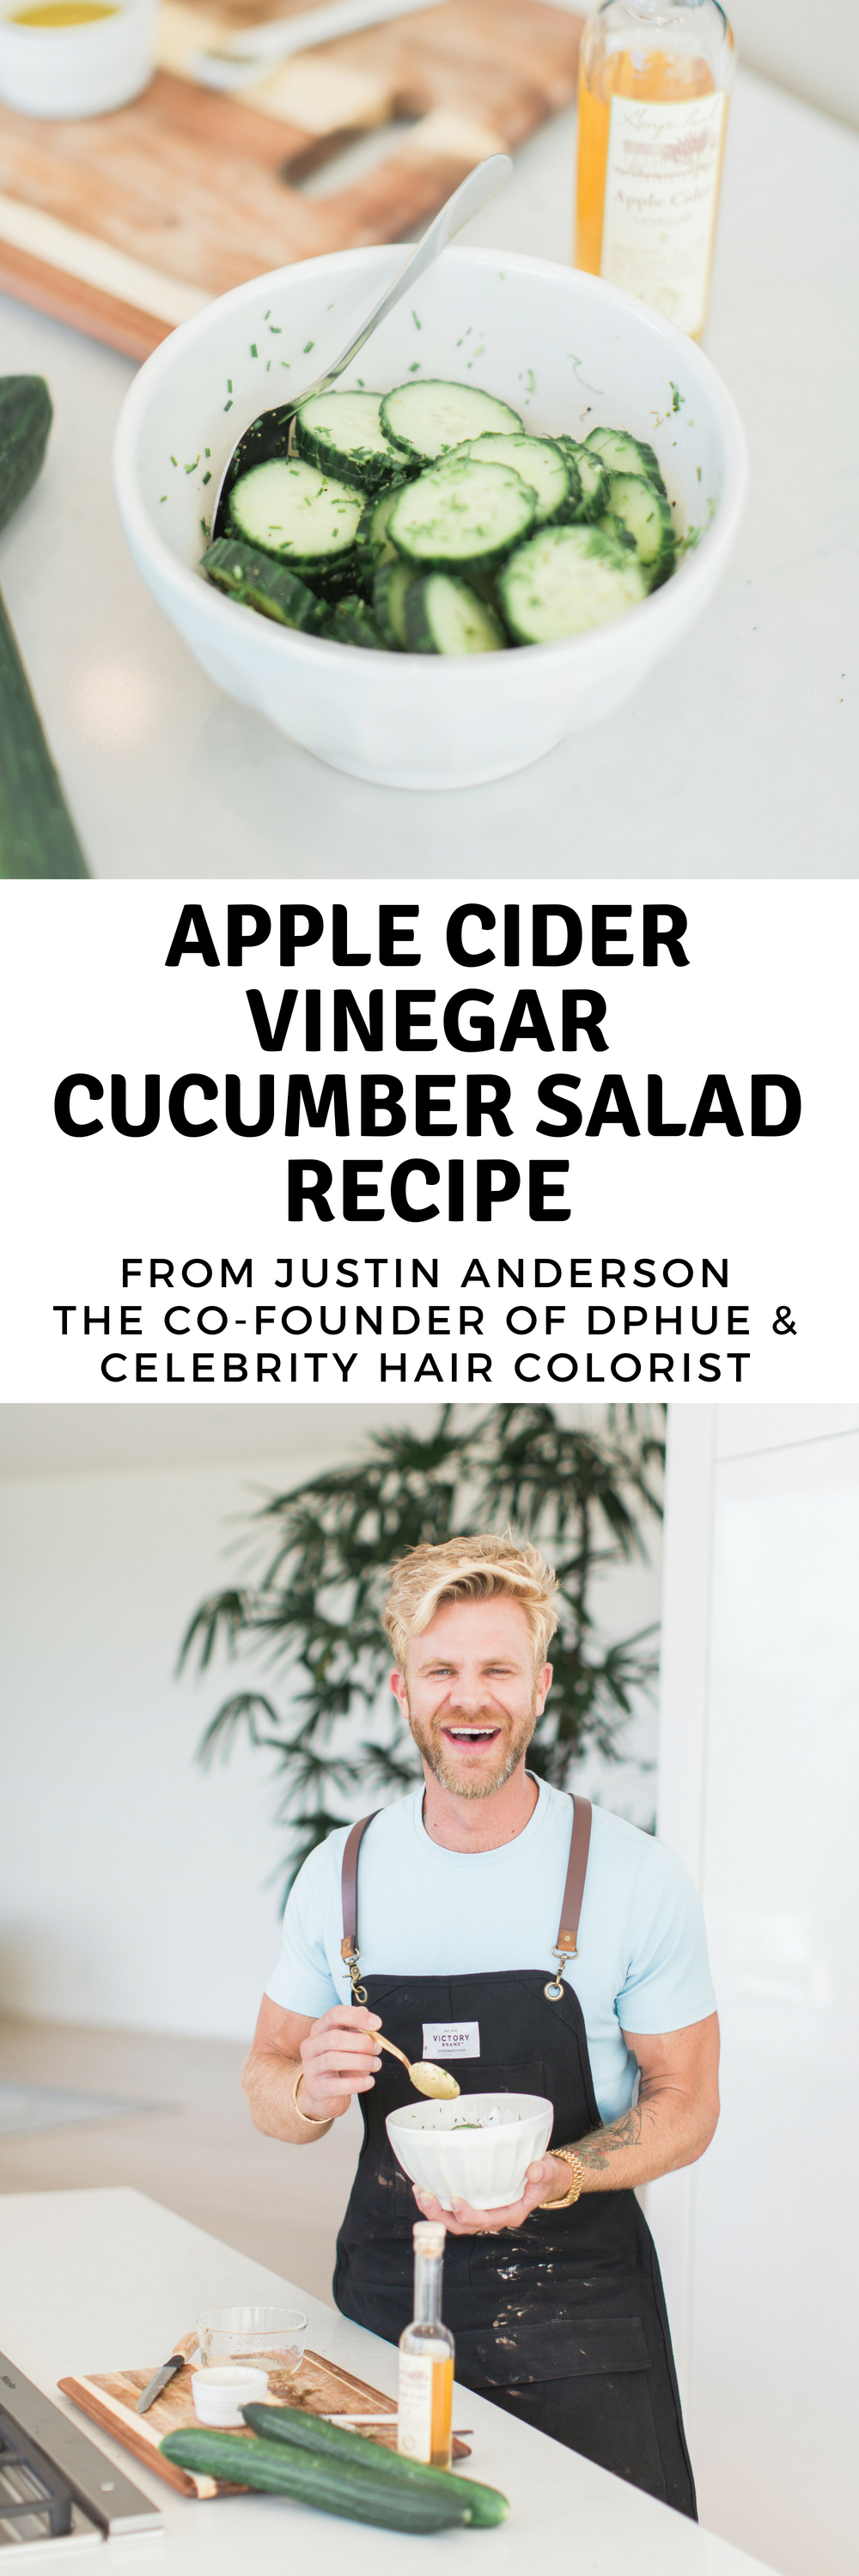 Apple Cider vinegar cucumber salad recipe